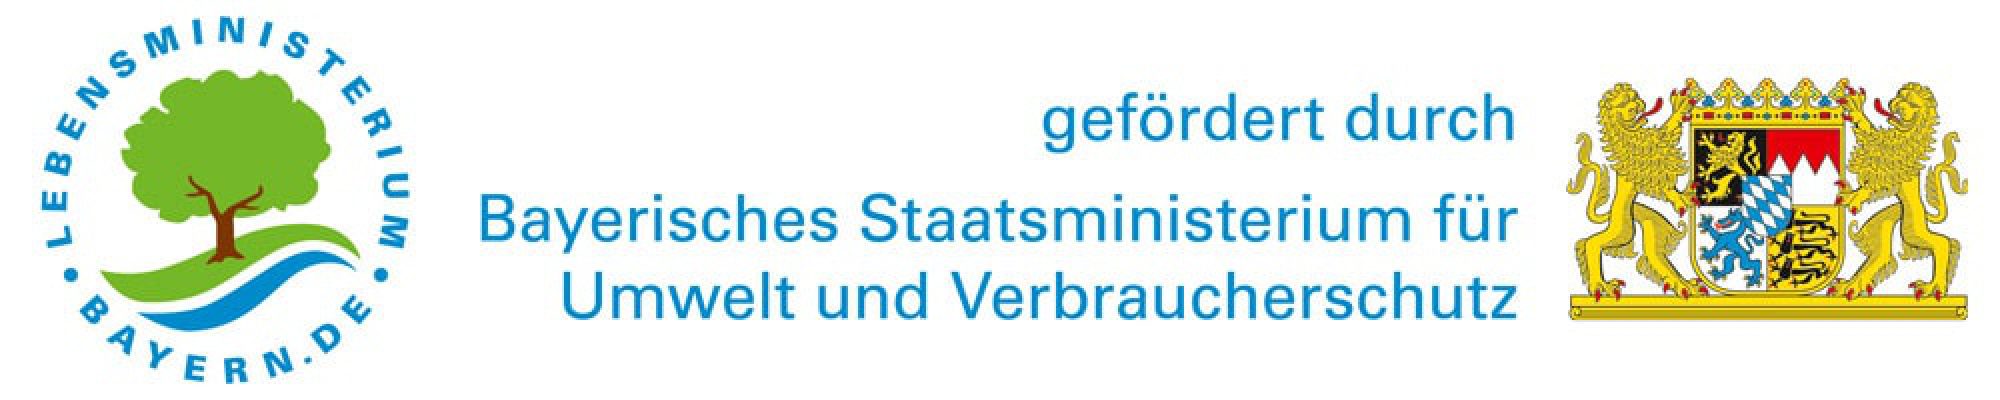 Bayerisches-Staatsministerium-logo